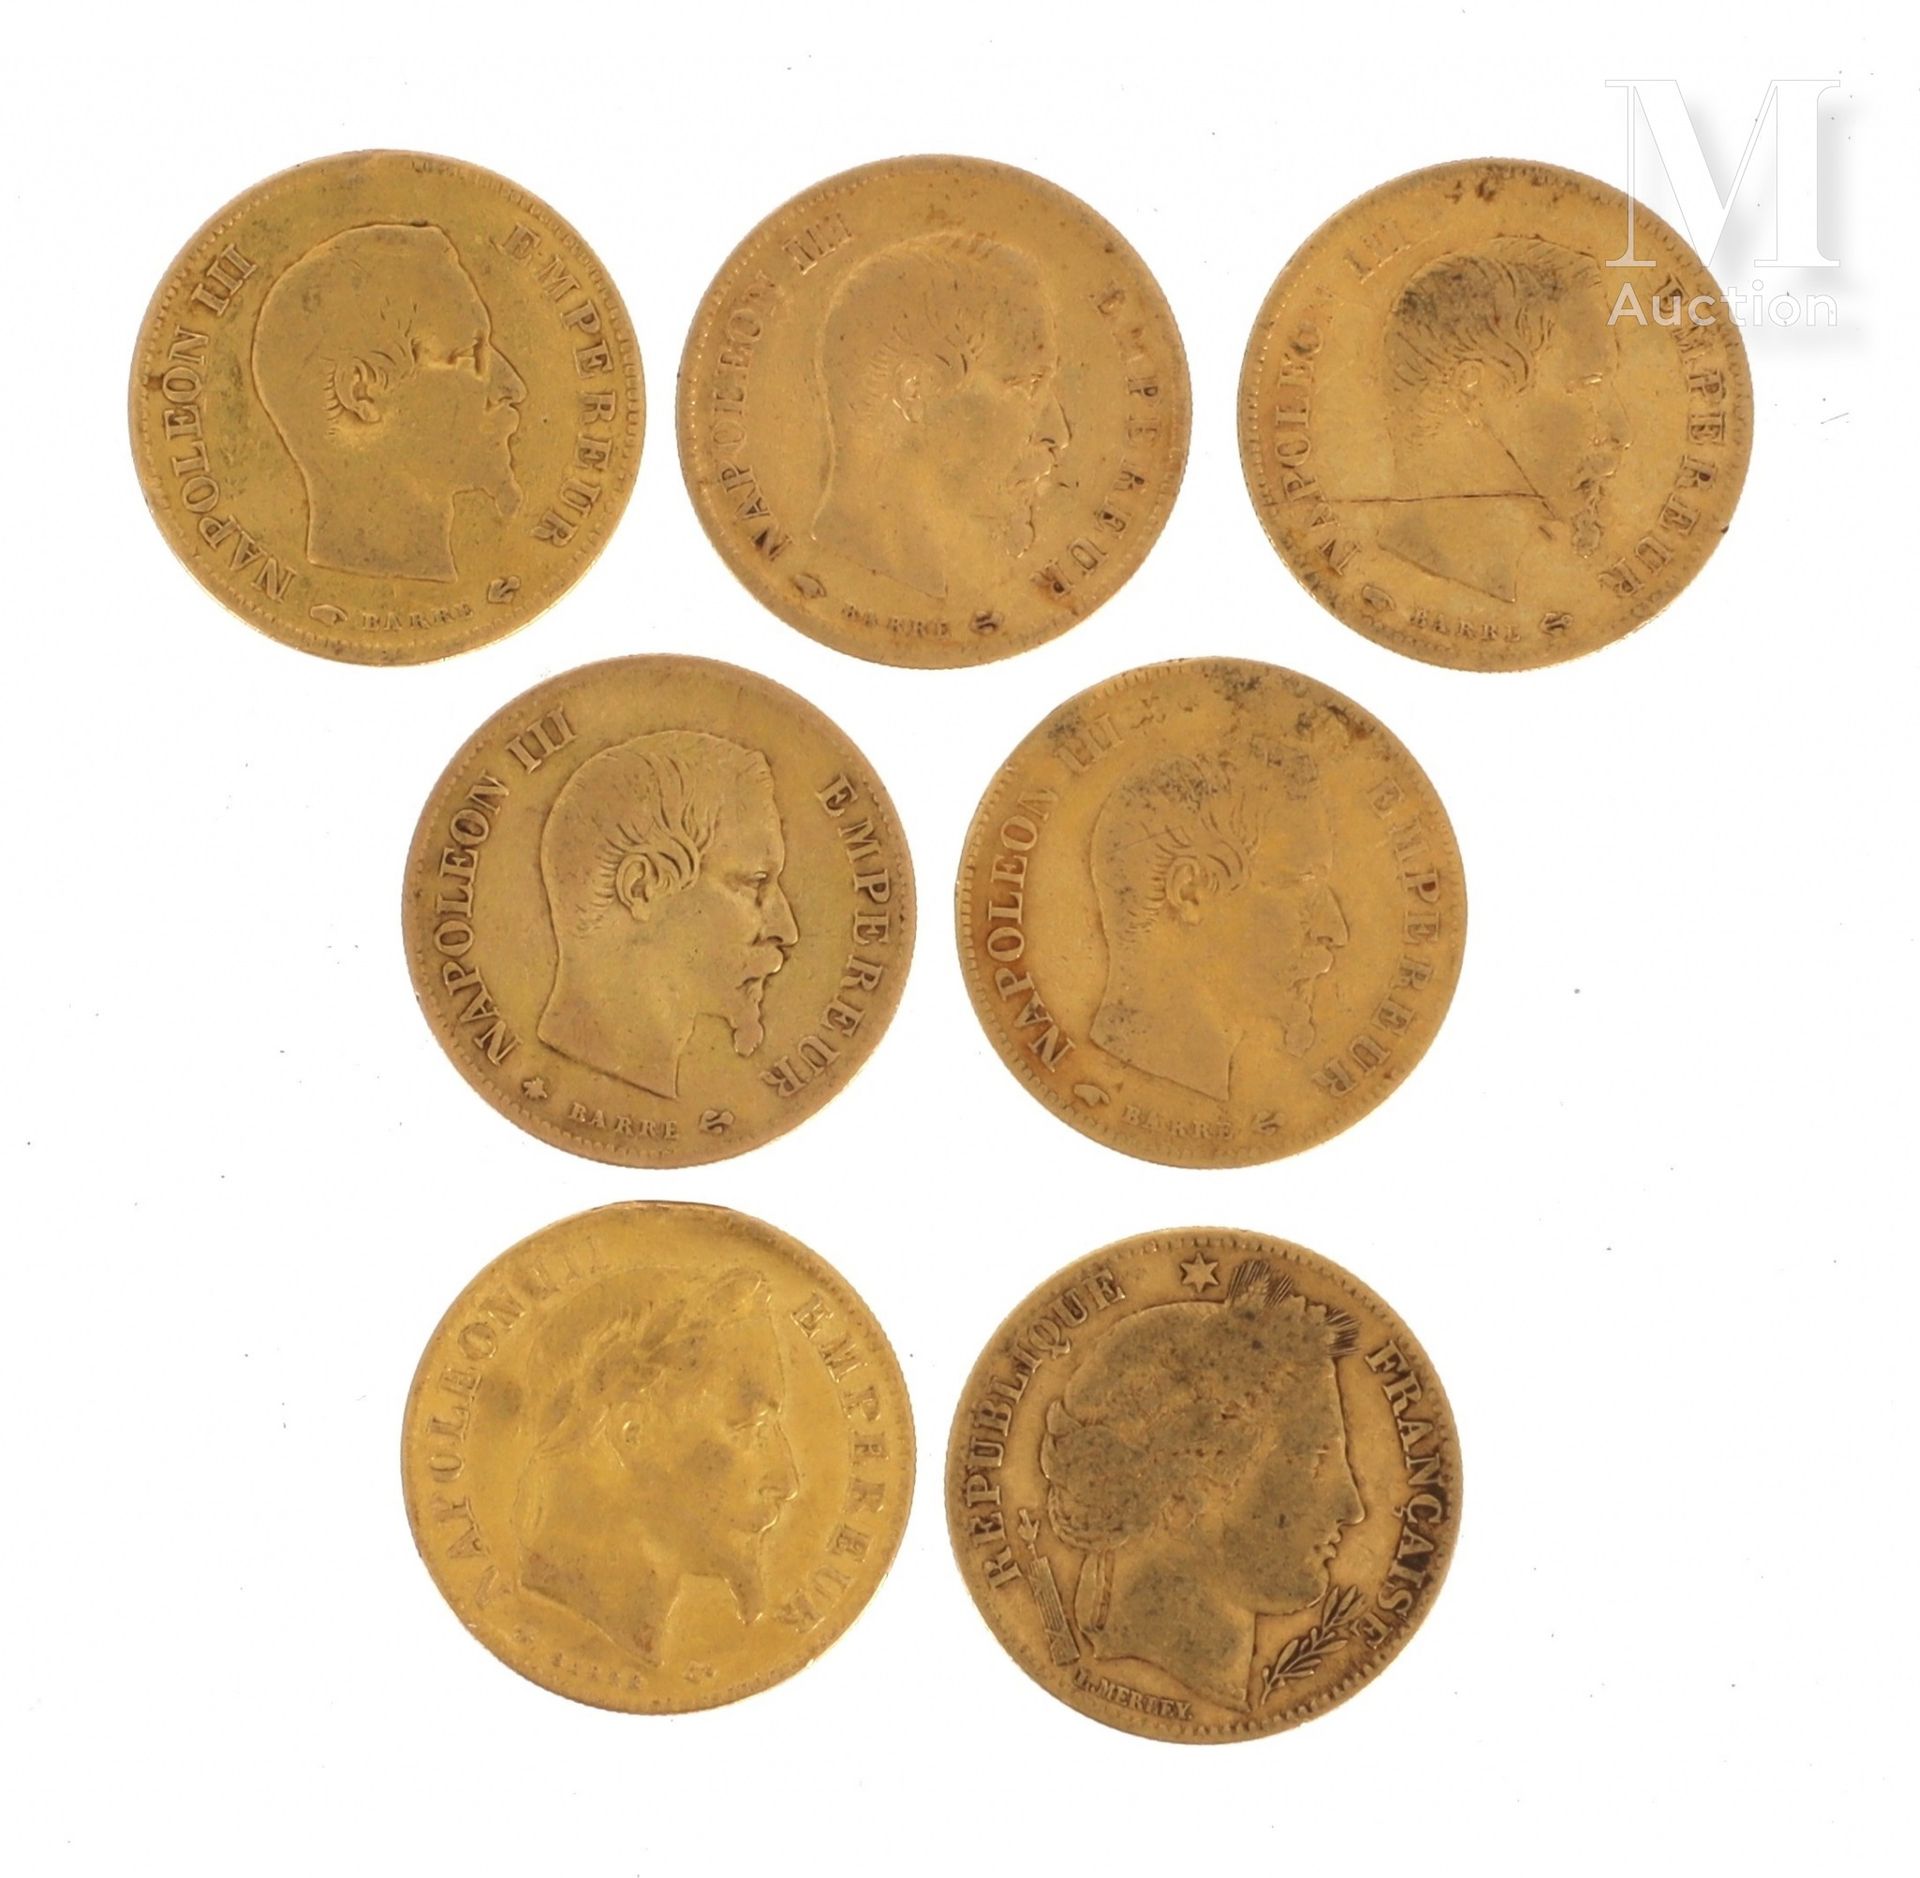 Sept pièces 10 FF or Sept pièces en or de 10 FF :

- 1 x 10 FF Cérès 1851 A

- 5&hellip;